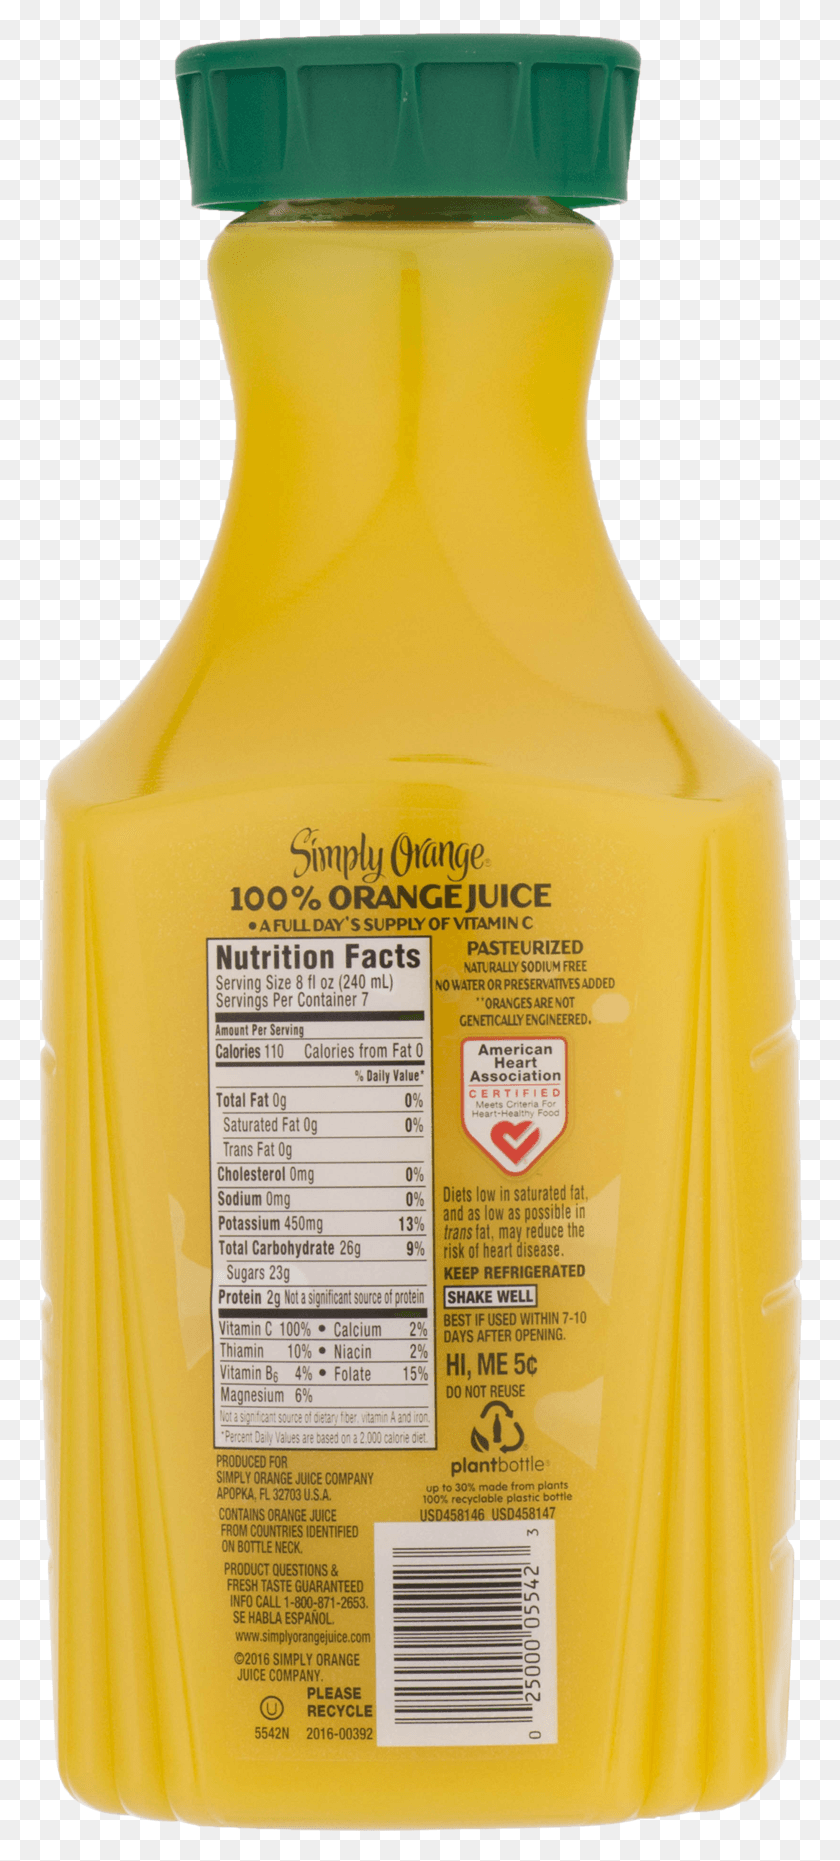 766x1801 Descargar Png Simply Orange Pulp Free Jugo De Naranja Original Simply Orange 32 Oz Código De Barras, Botella, Bebida, Bebida Hd Png